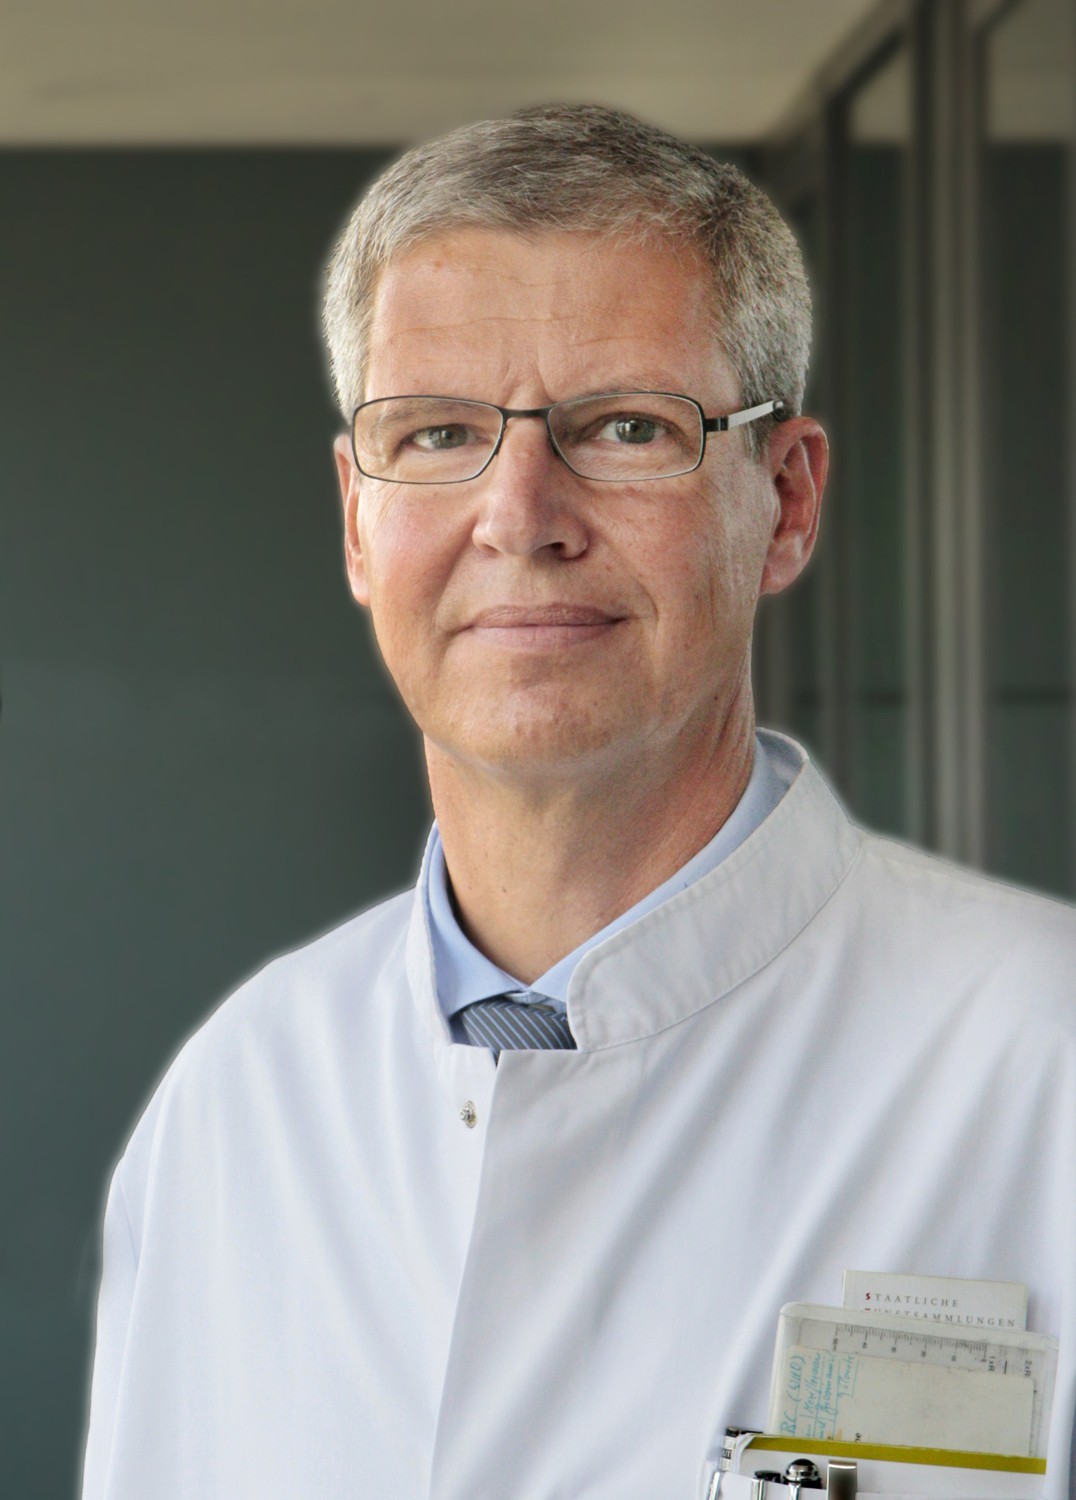 Prof. Hubert Wirtz, Leiter des Bereichs Pneumologie am Universitätsklinikum Leipzig (UKL), behandelt vor allem Fälle von schwerem Asthma.